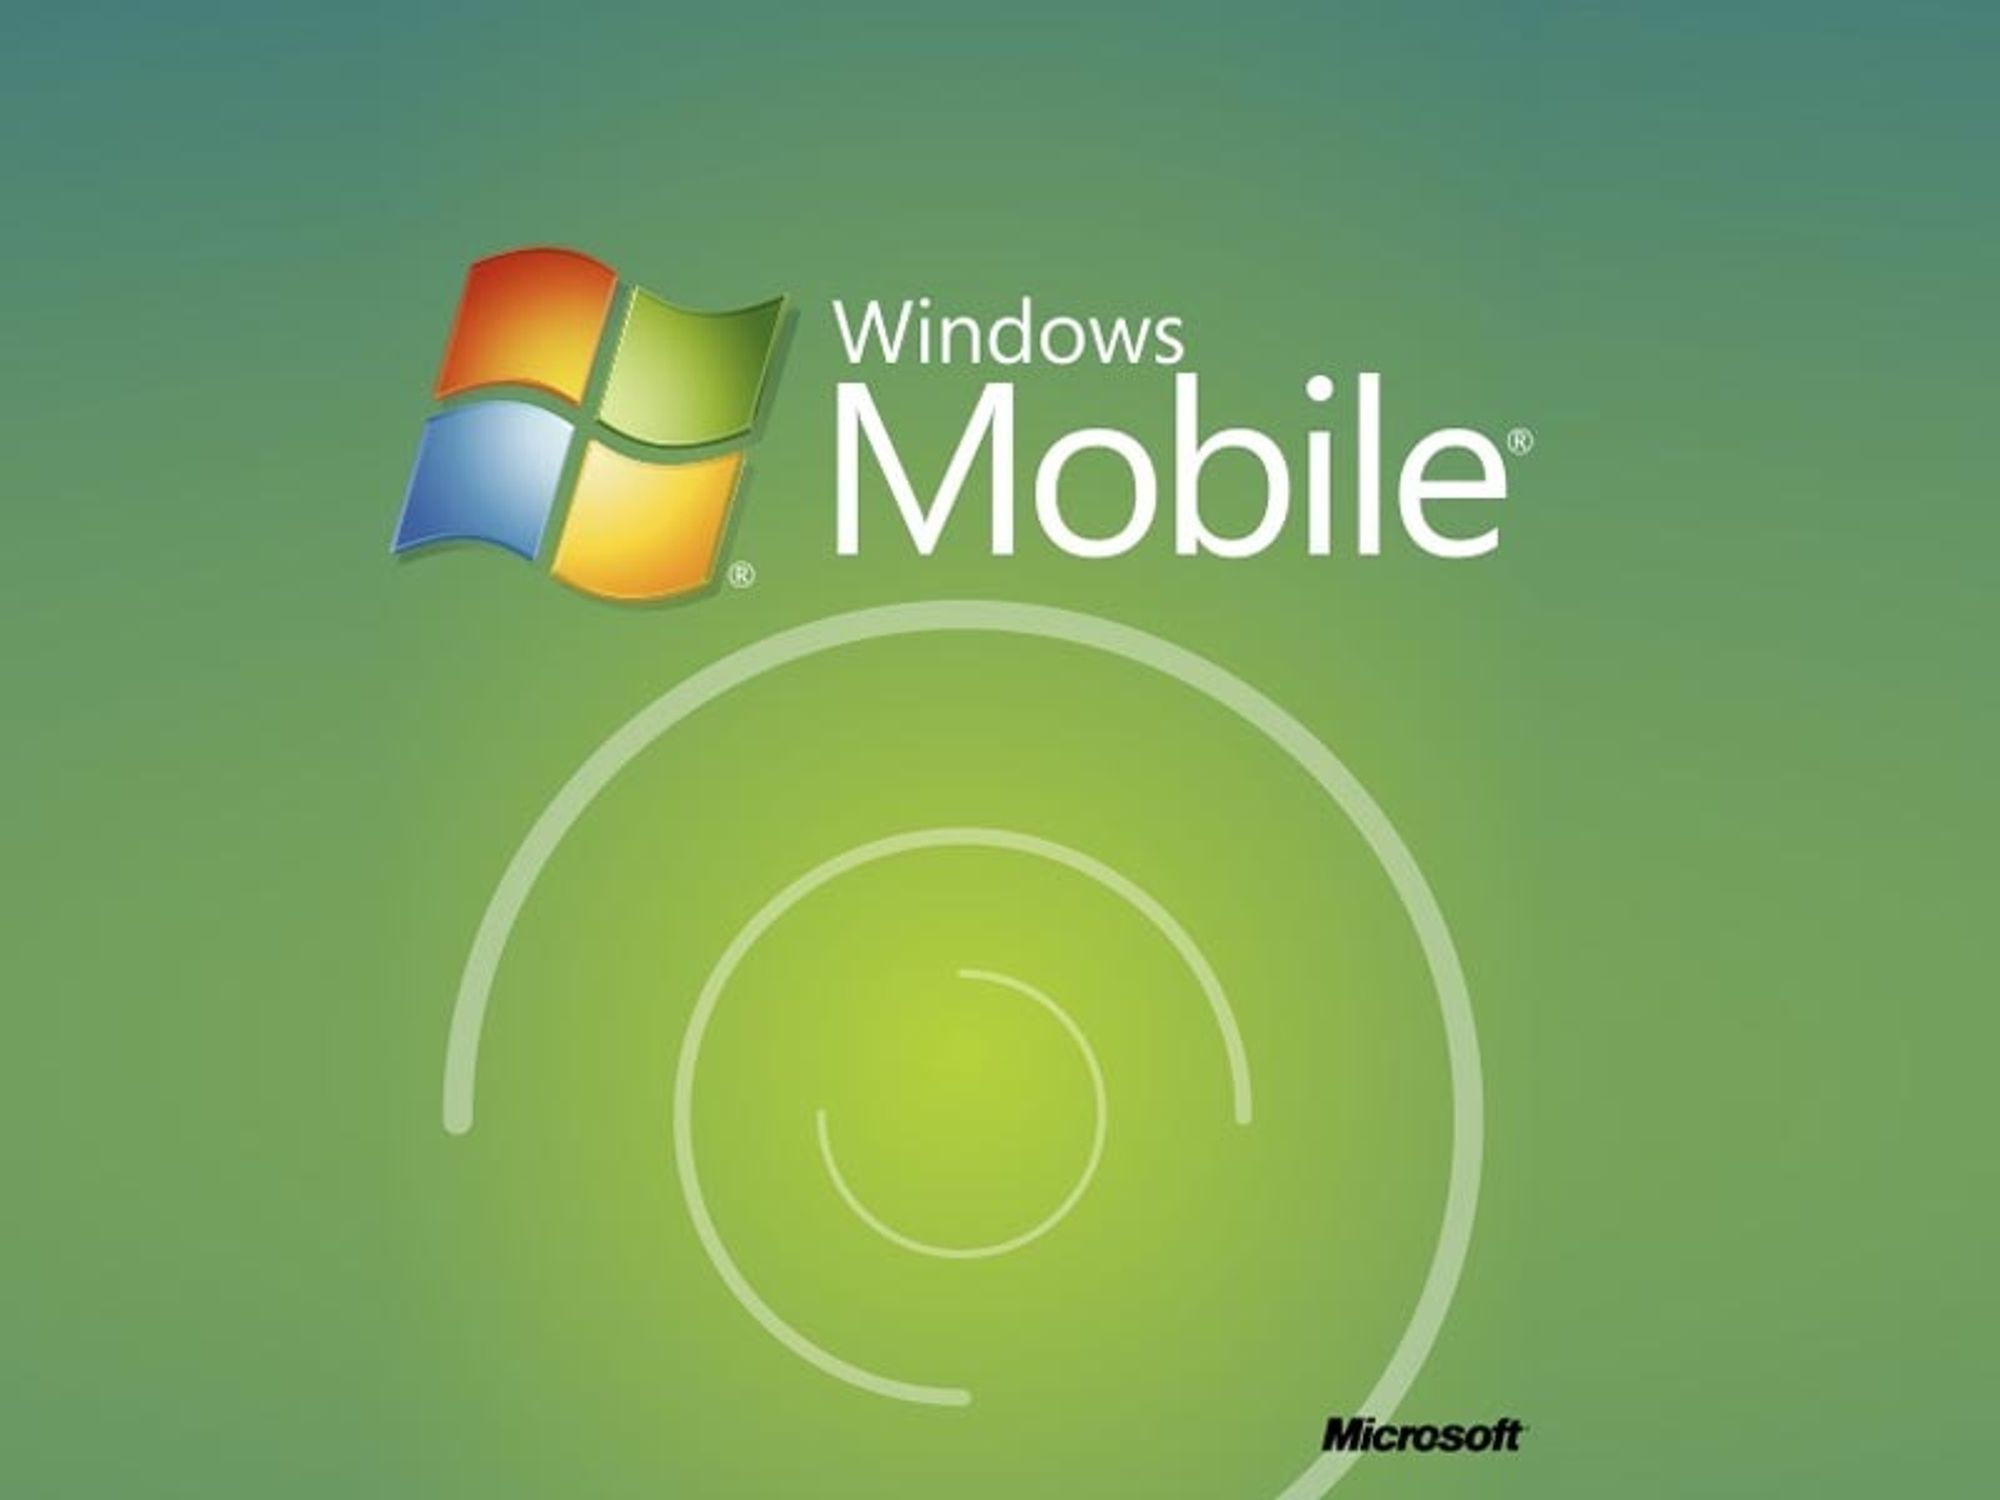 Windows Mobile 7-detaljer om to uker